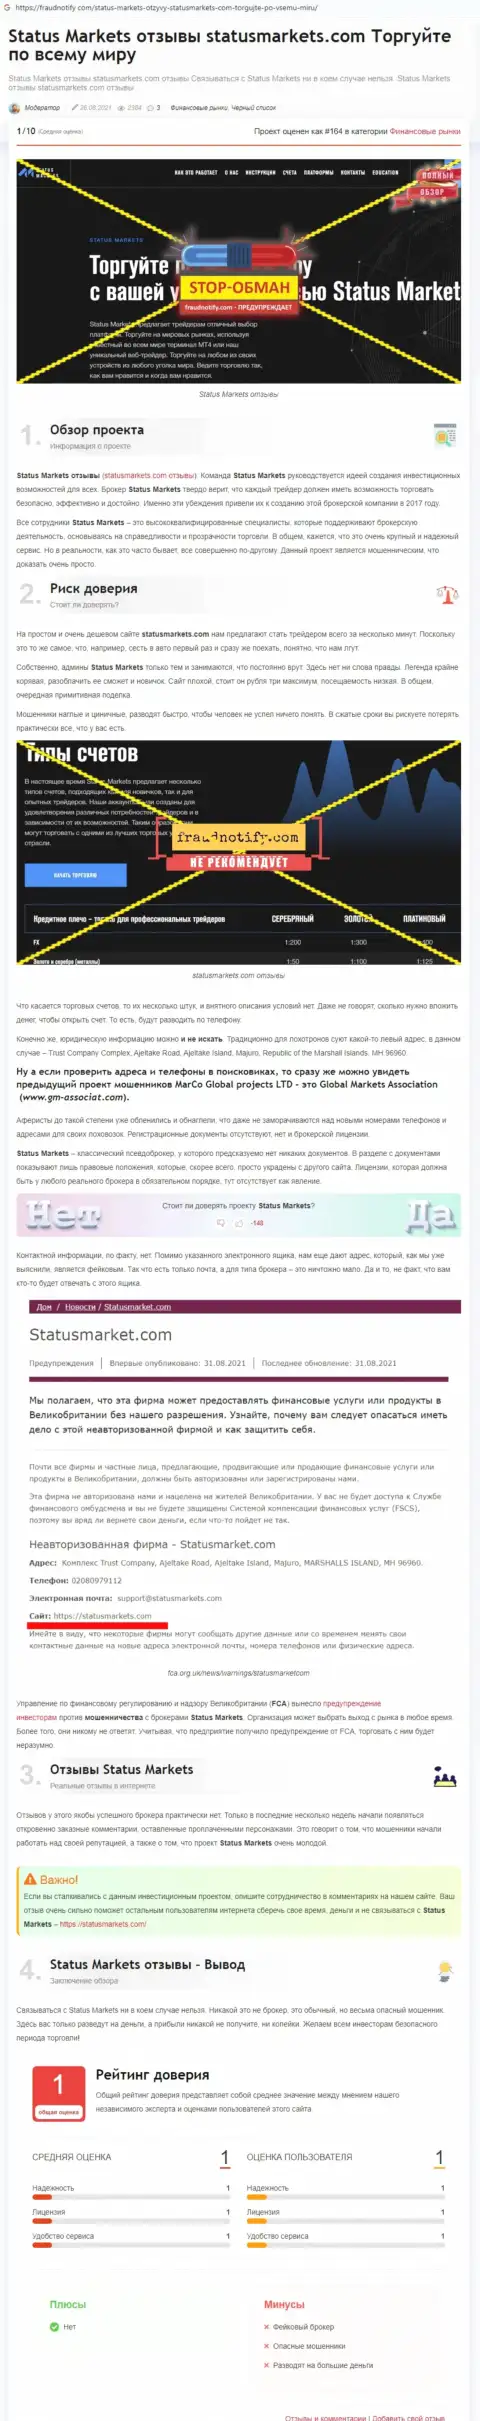 В организации StatusMarkets разводят - доказательства мошеннических комбинаций (обзор махинаций компании)